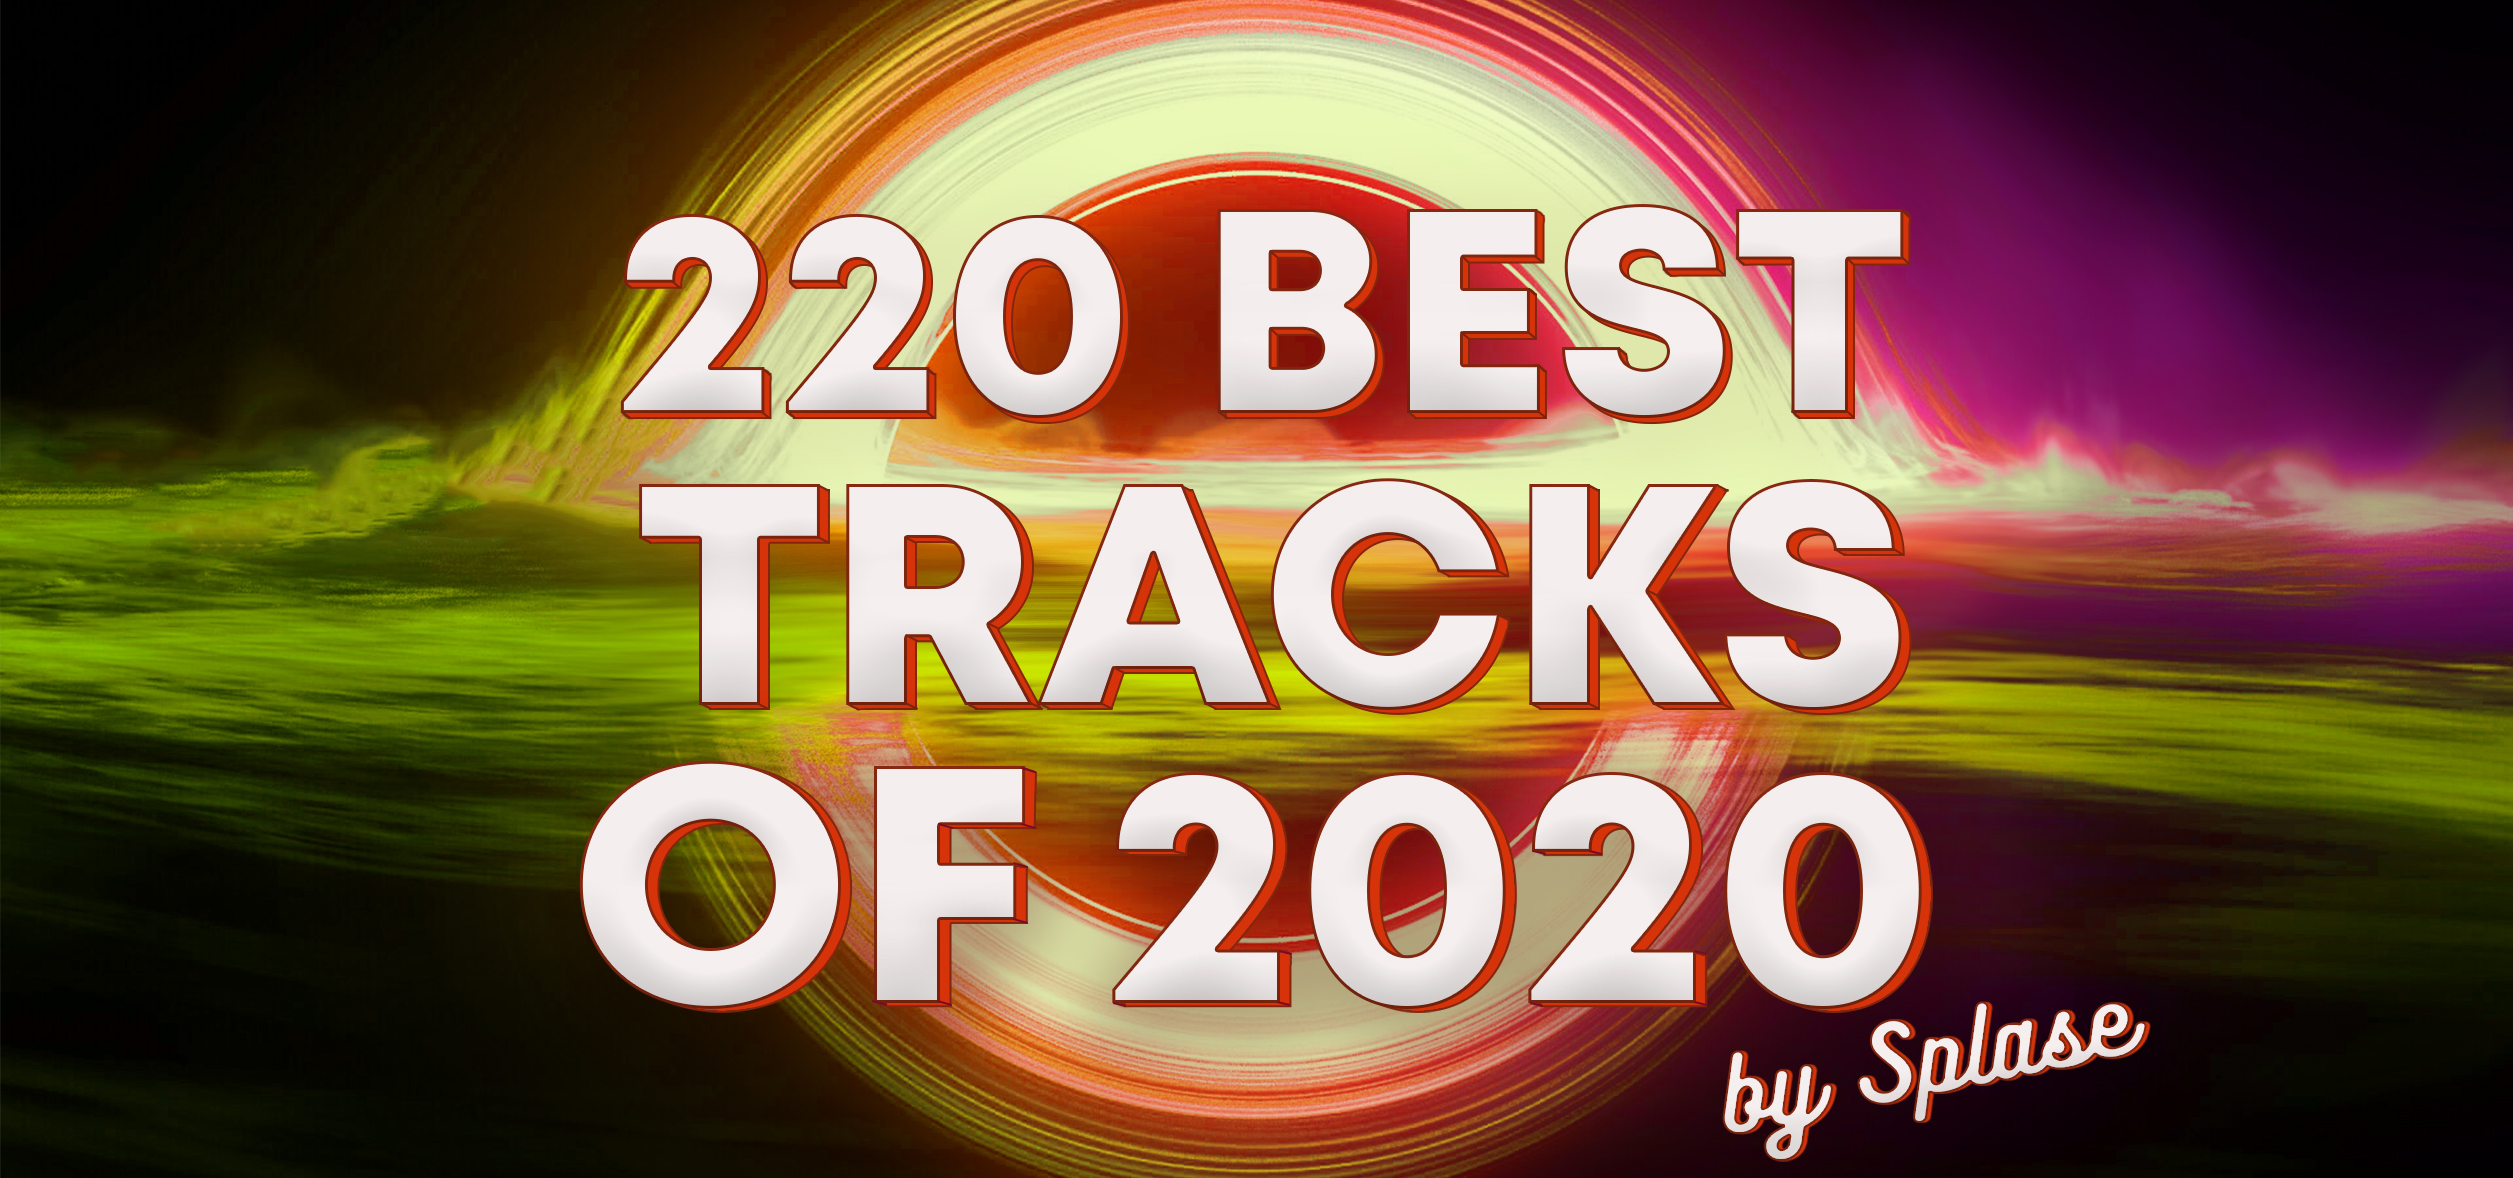 100 Лучших альбомов 2020 года / 100 Best Albums of 2020 by Splase